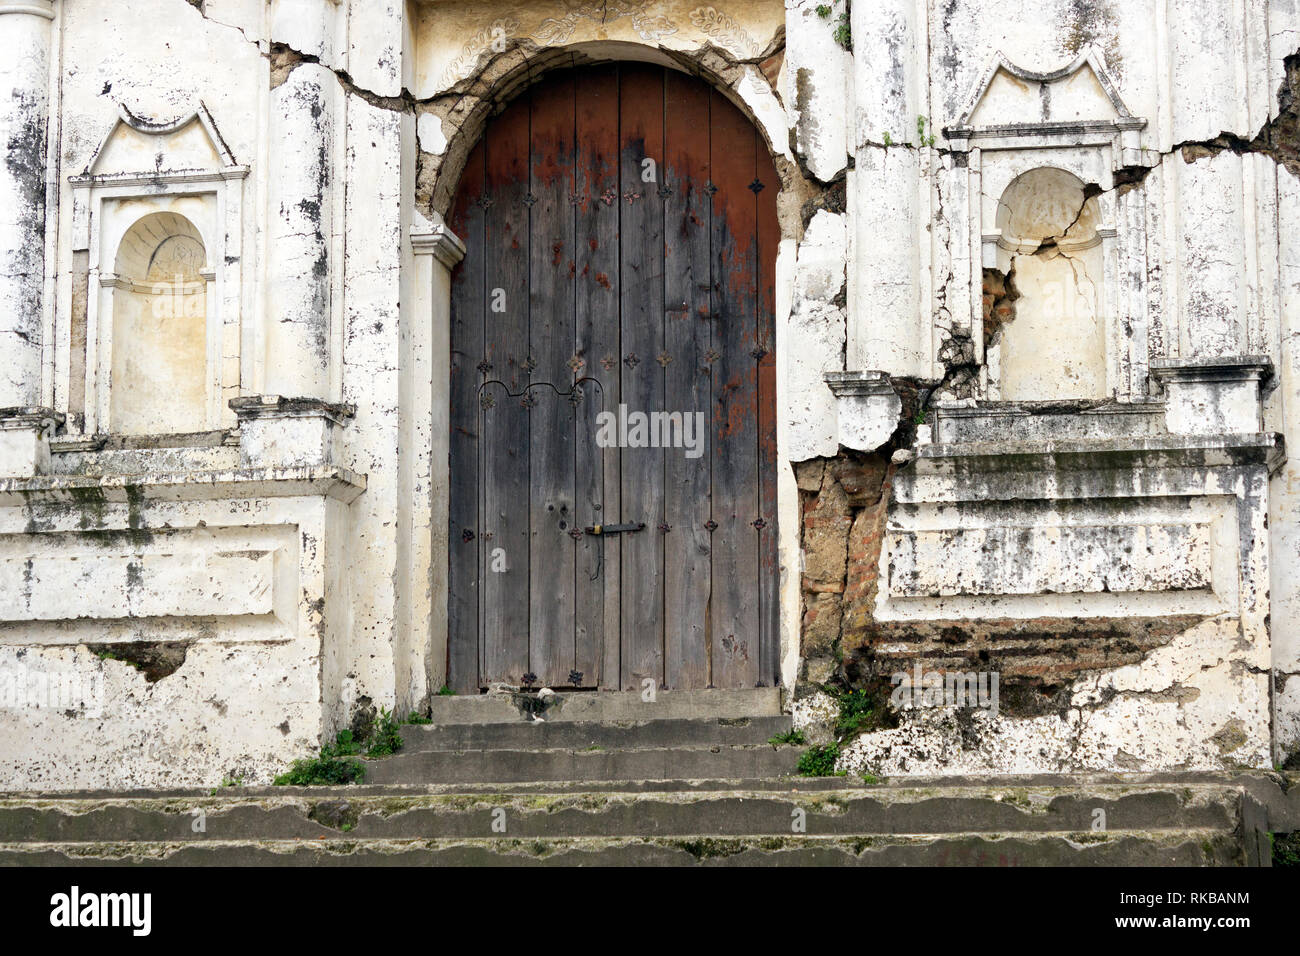 La Iglesia en ruinas muy antigua, con puerta al frente desteñida, localizada muy cerca de Antigua Guatemala, ciudad colonial de mucha importancia Foto Stock